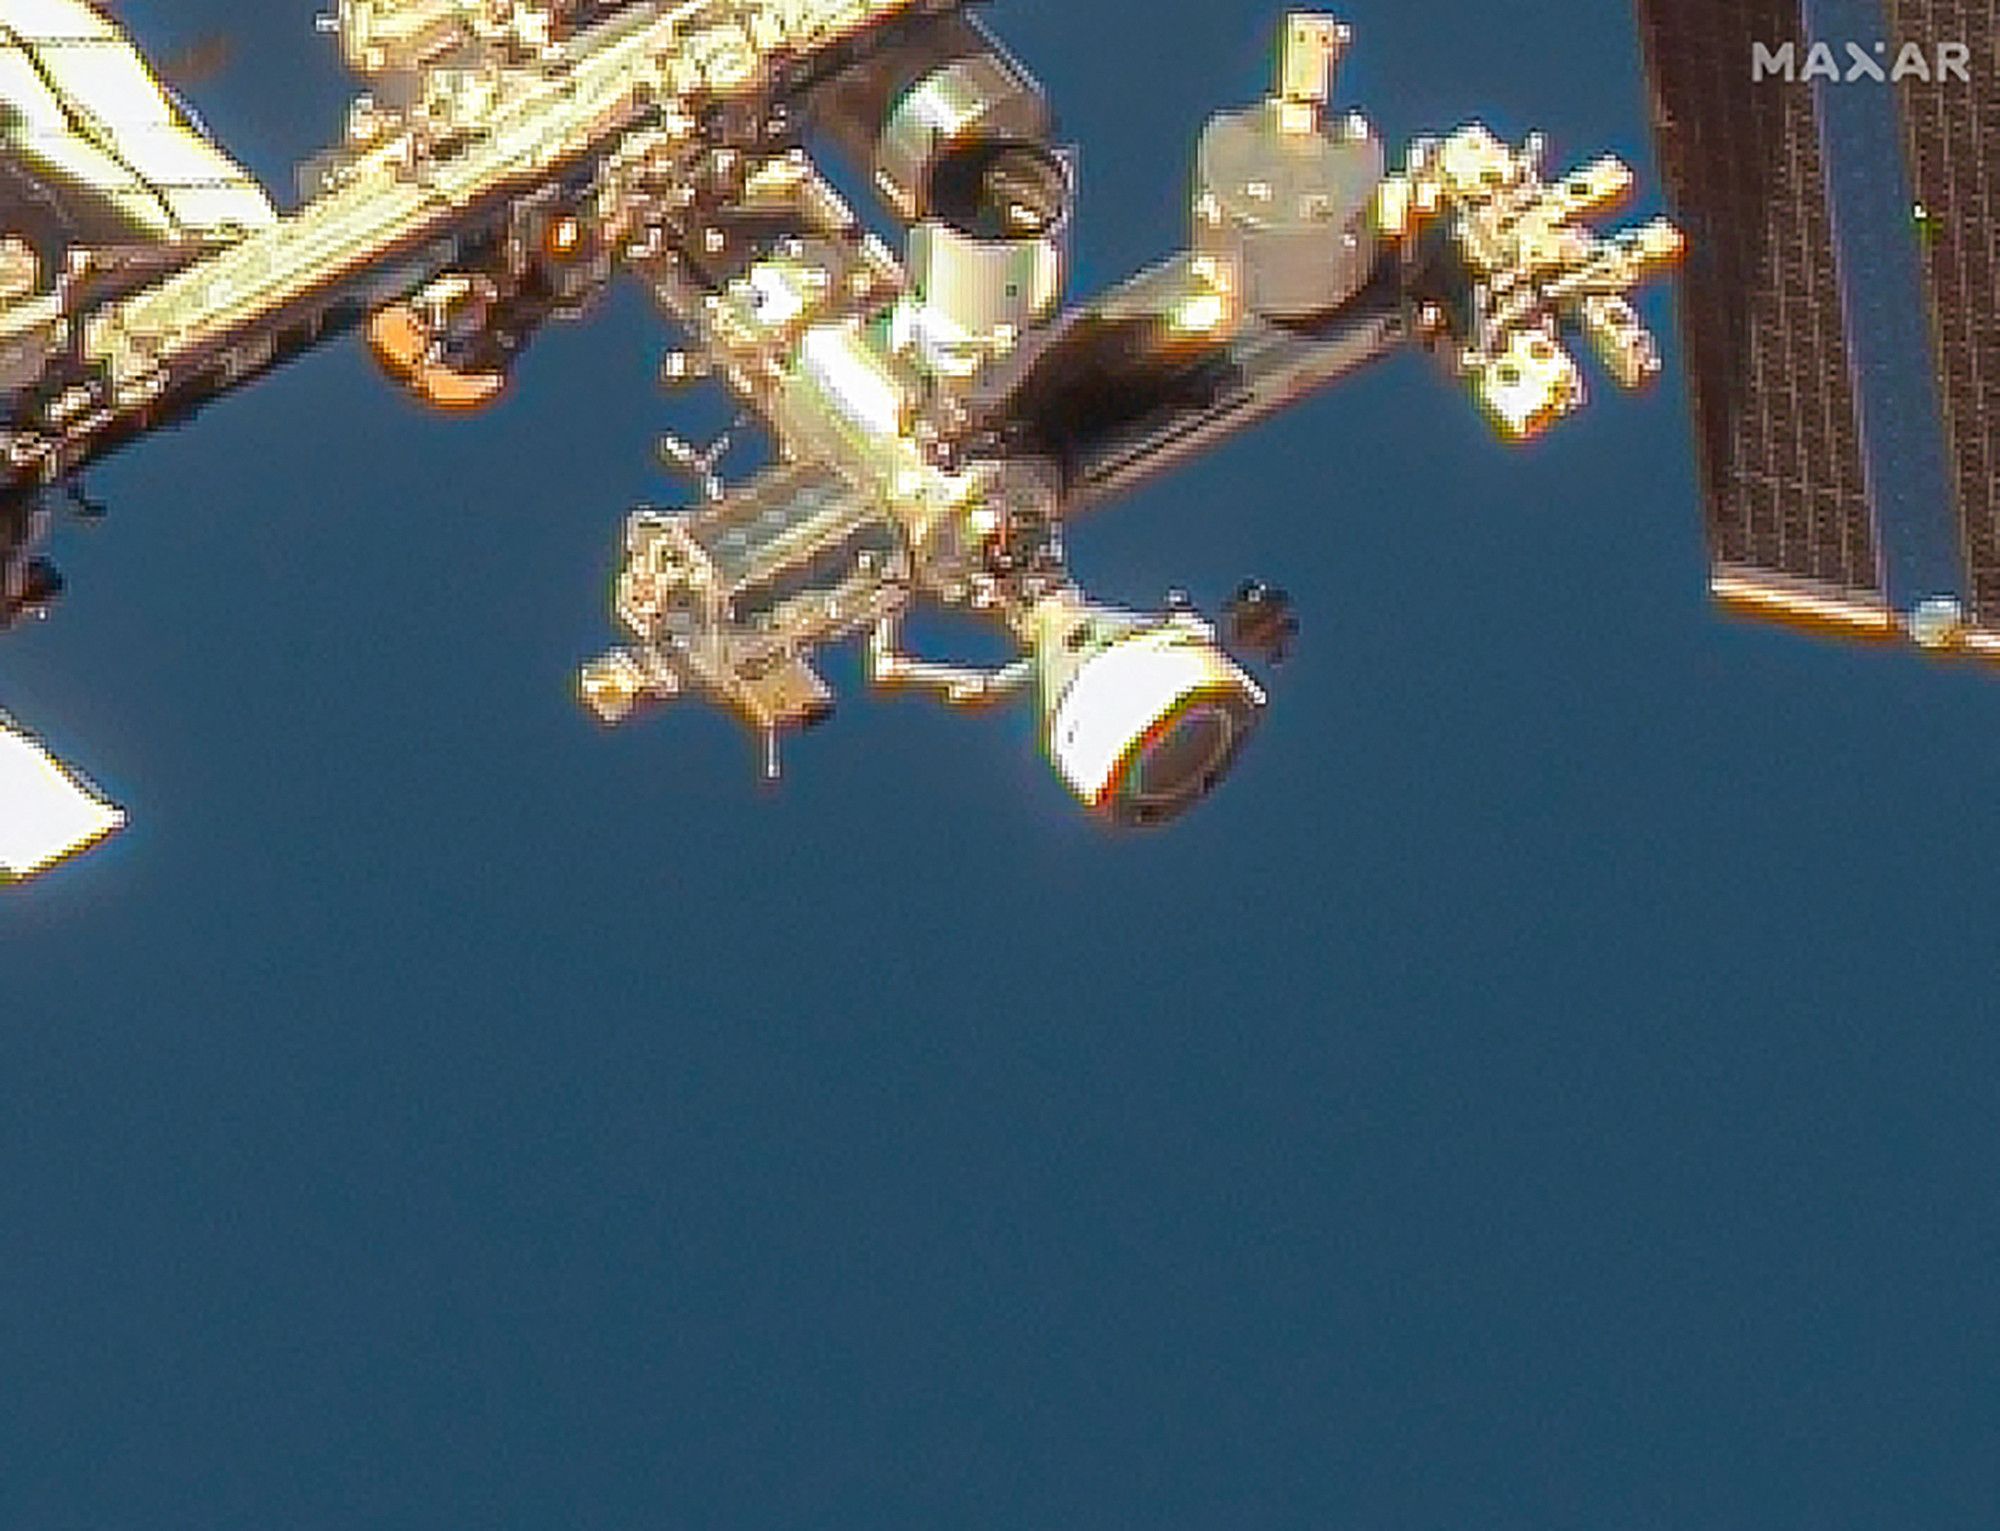 La Nasa choisit SpaceX pour détruire l'ISS après 2030